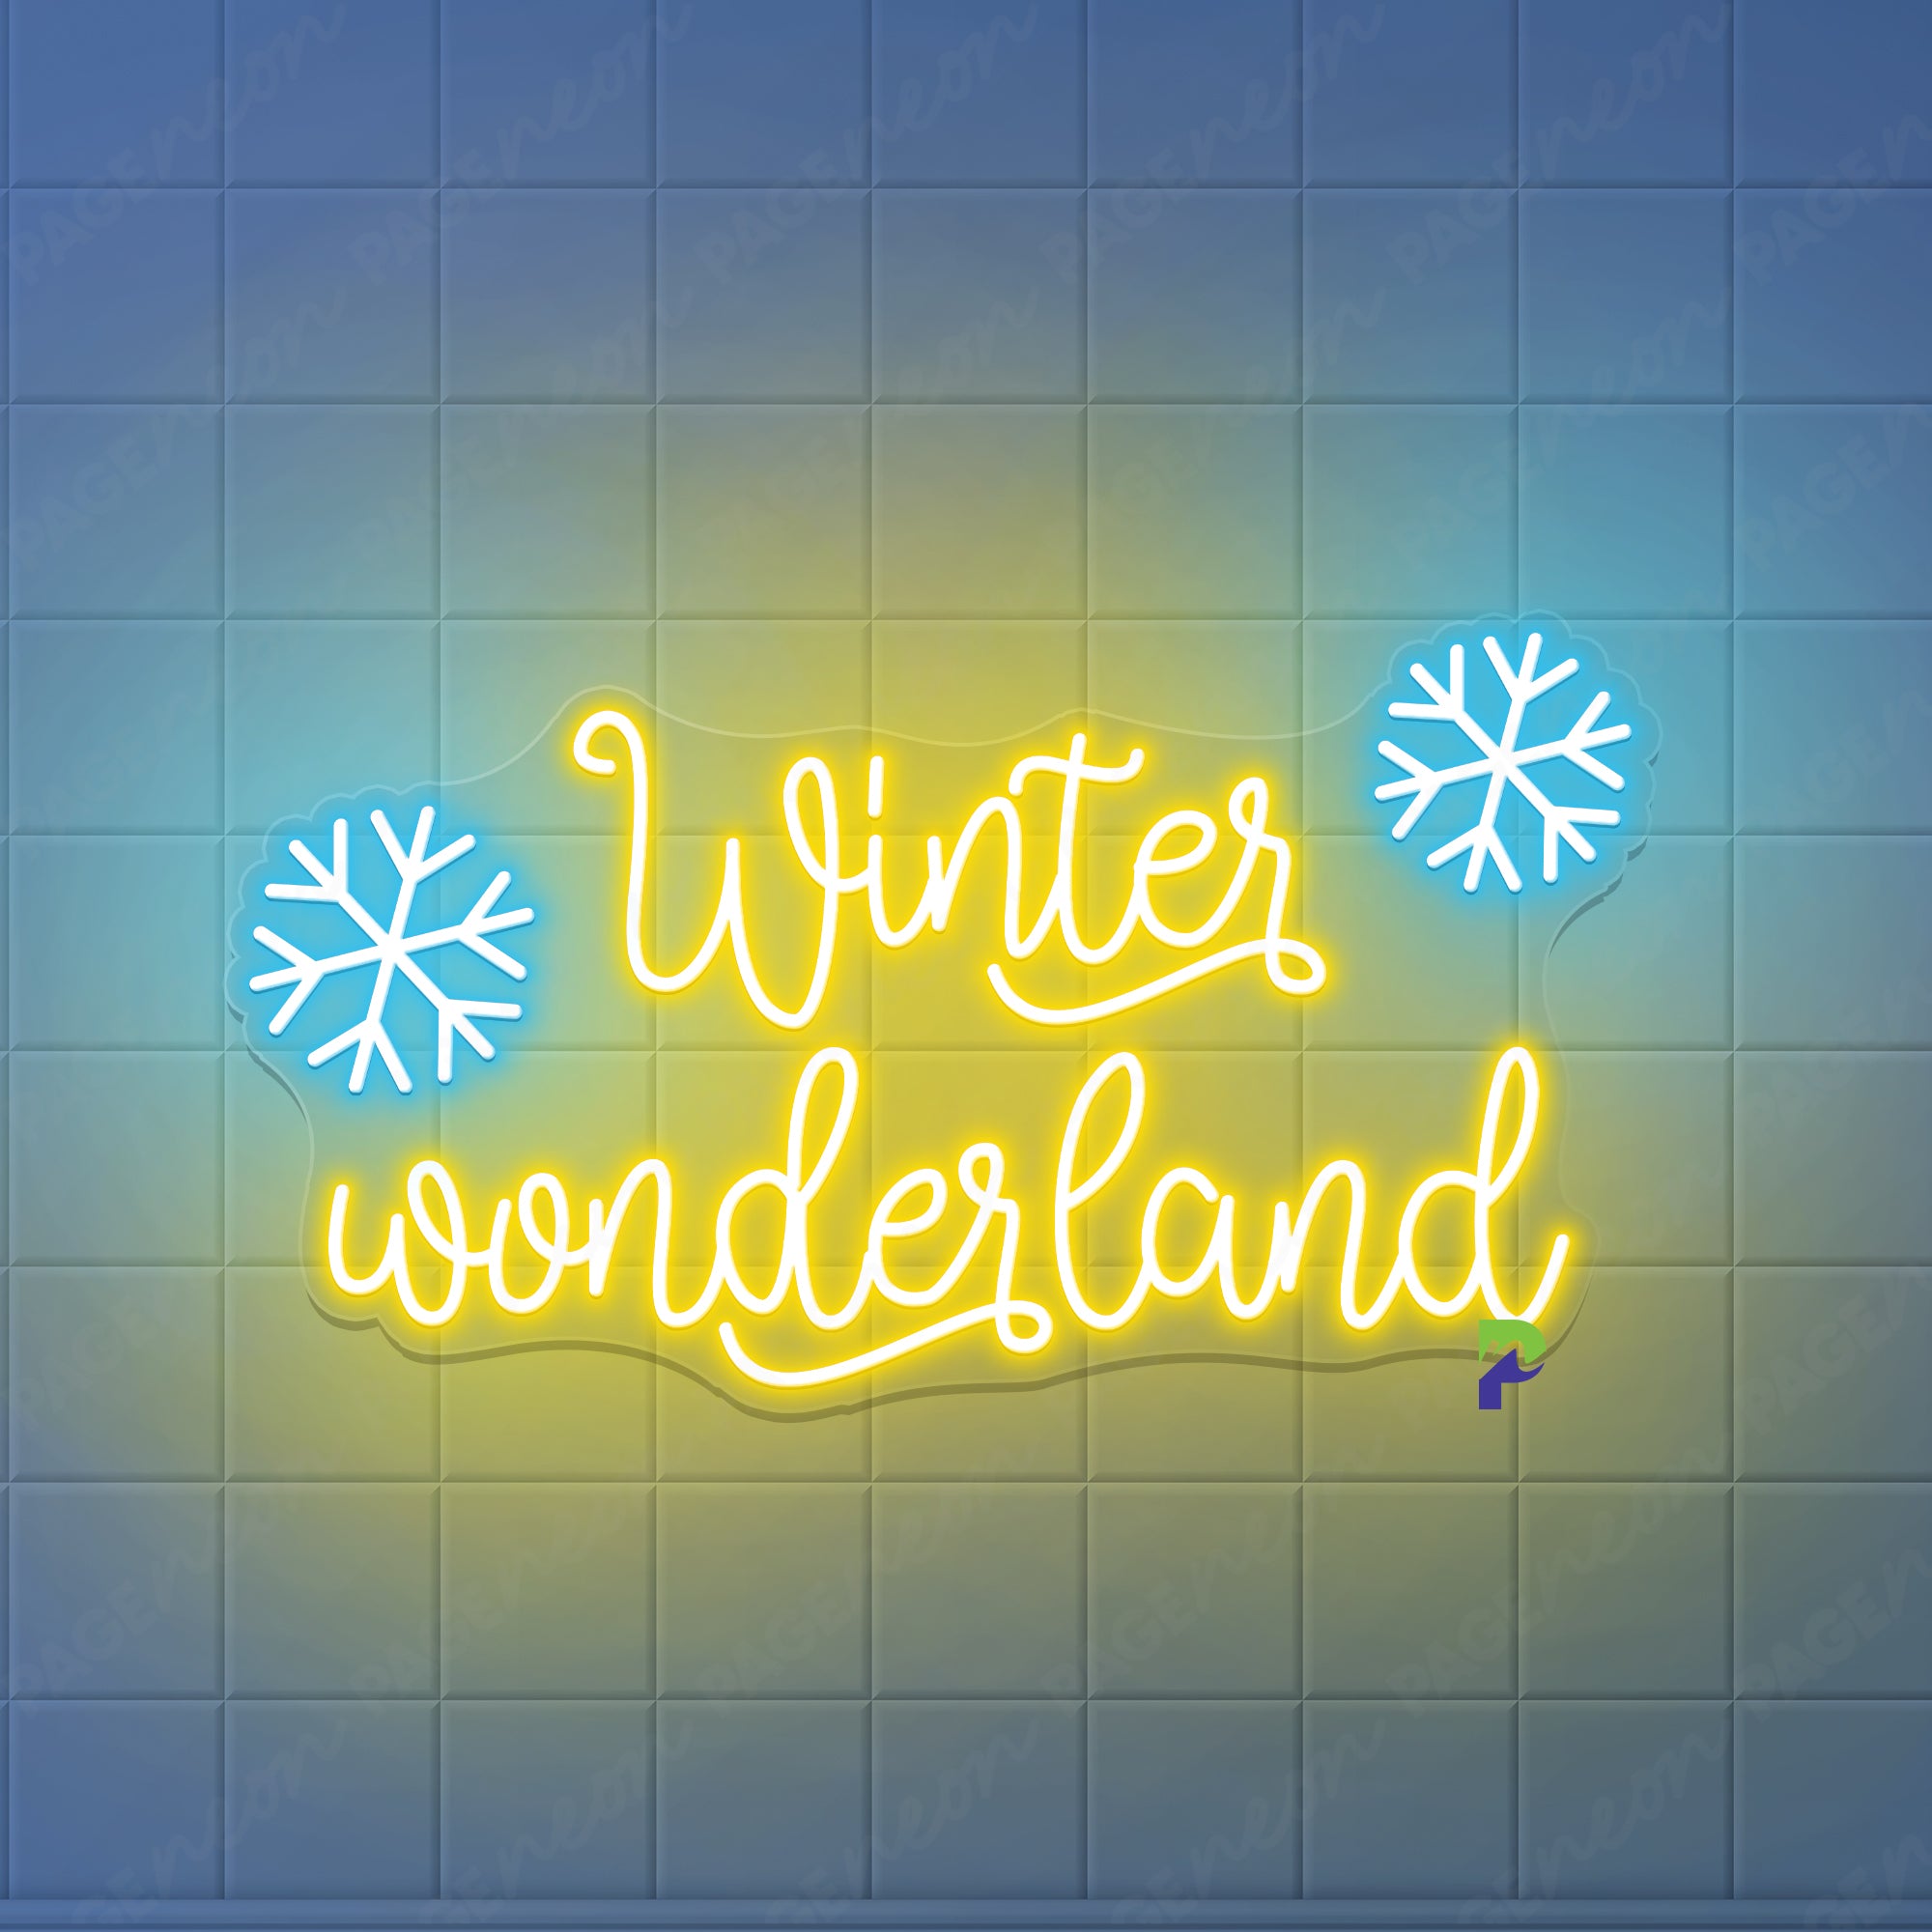 Winter Wonderland Neon Sign Led Light For Inspirational